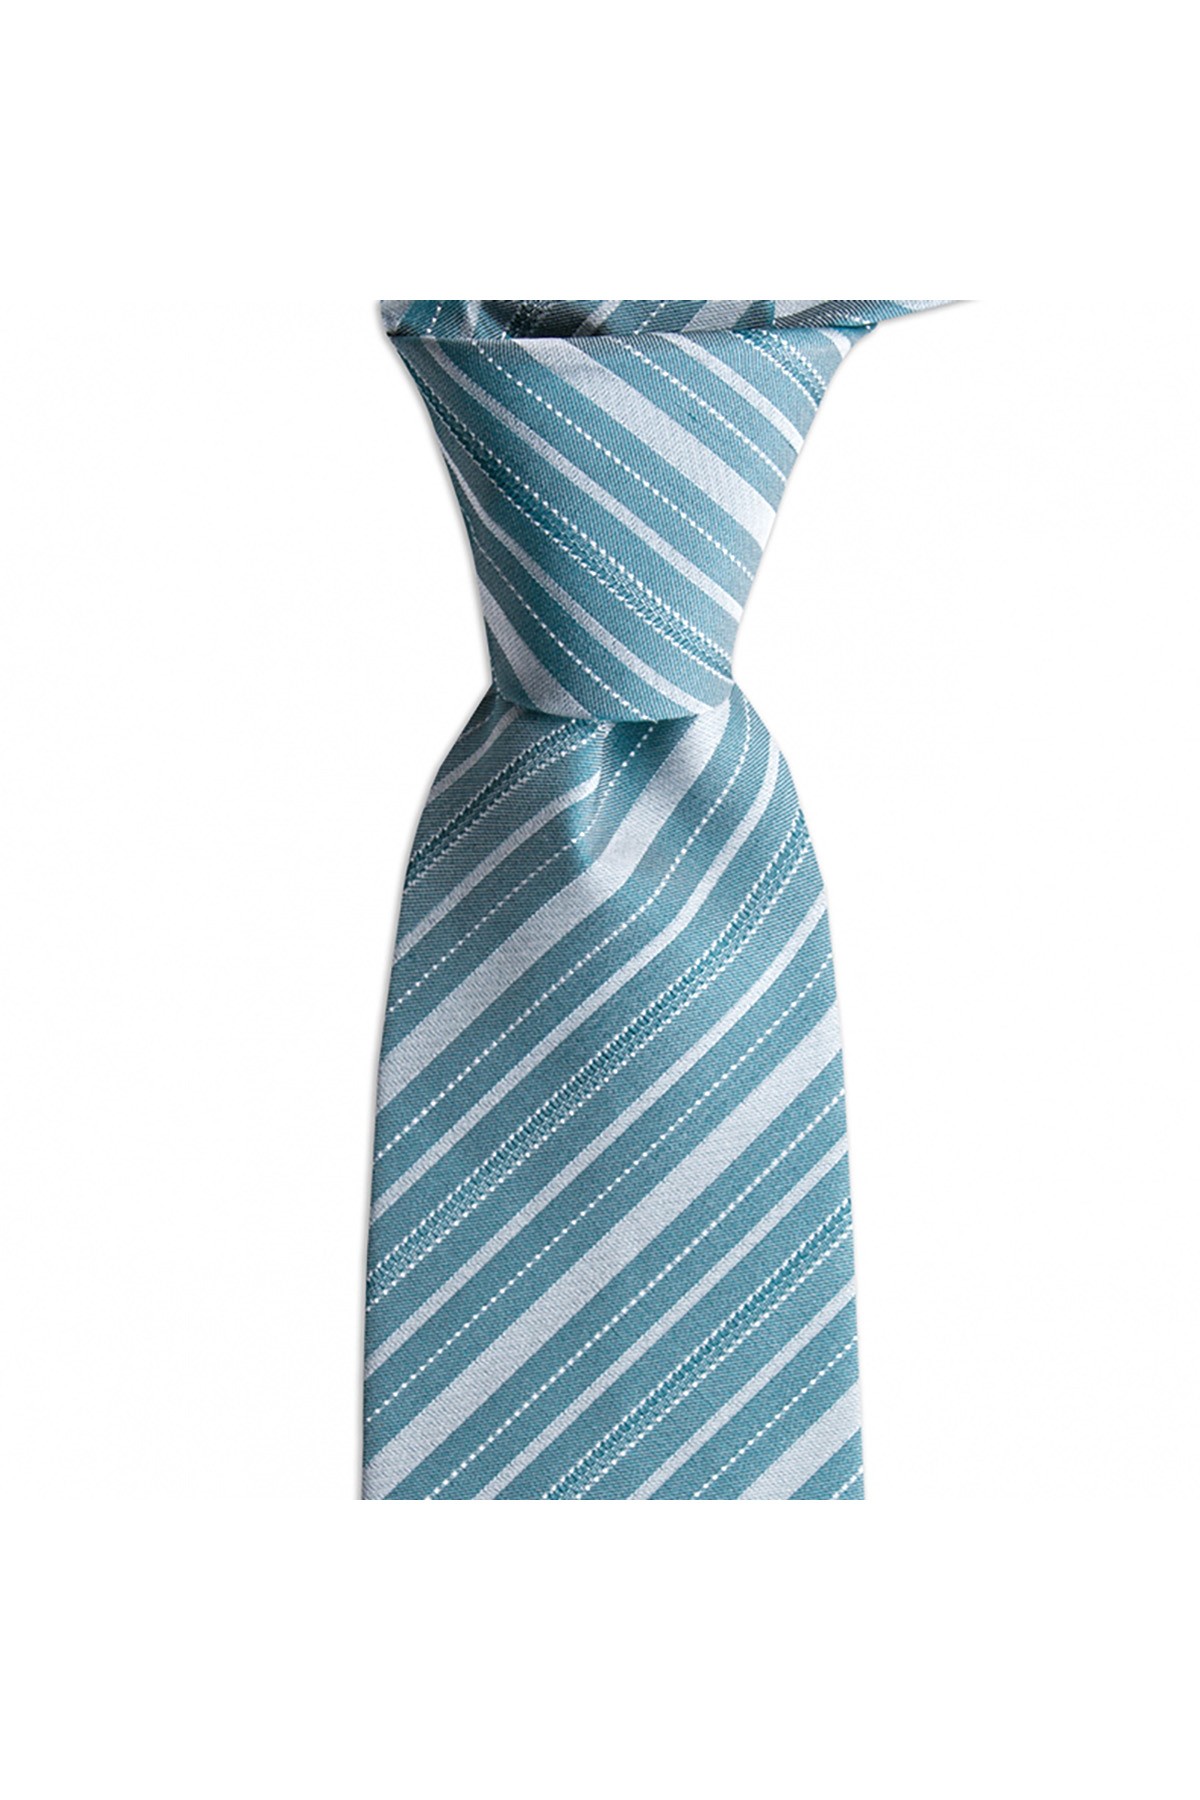 İnce çizgili 8 cm genişliğinde klasik ipek kravat - Yeşil